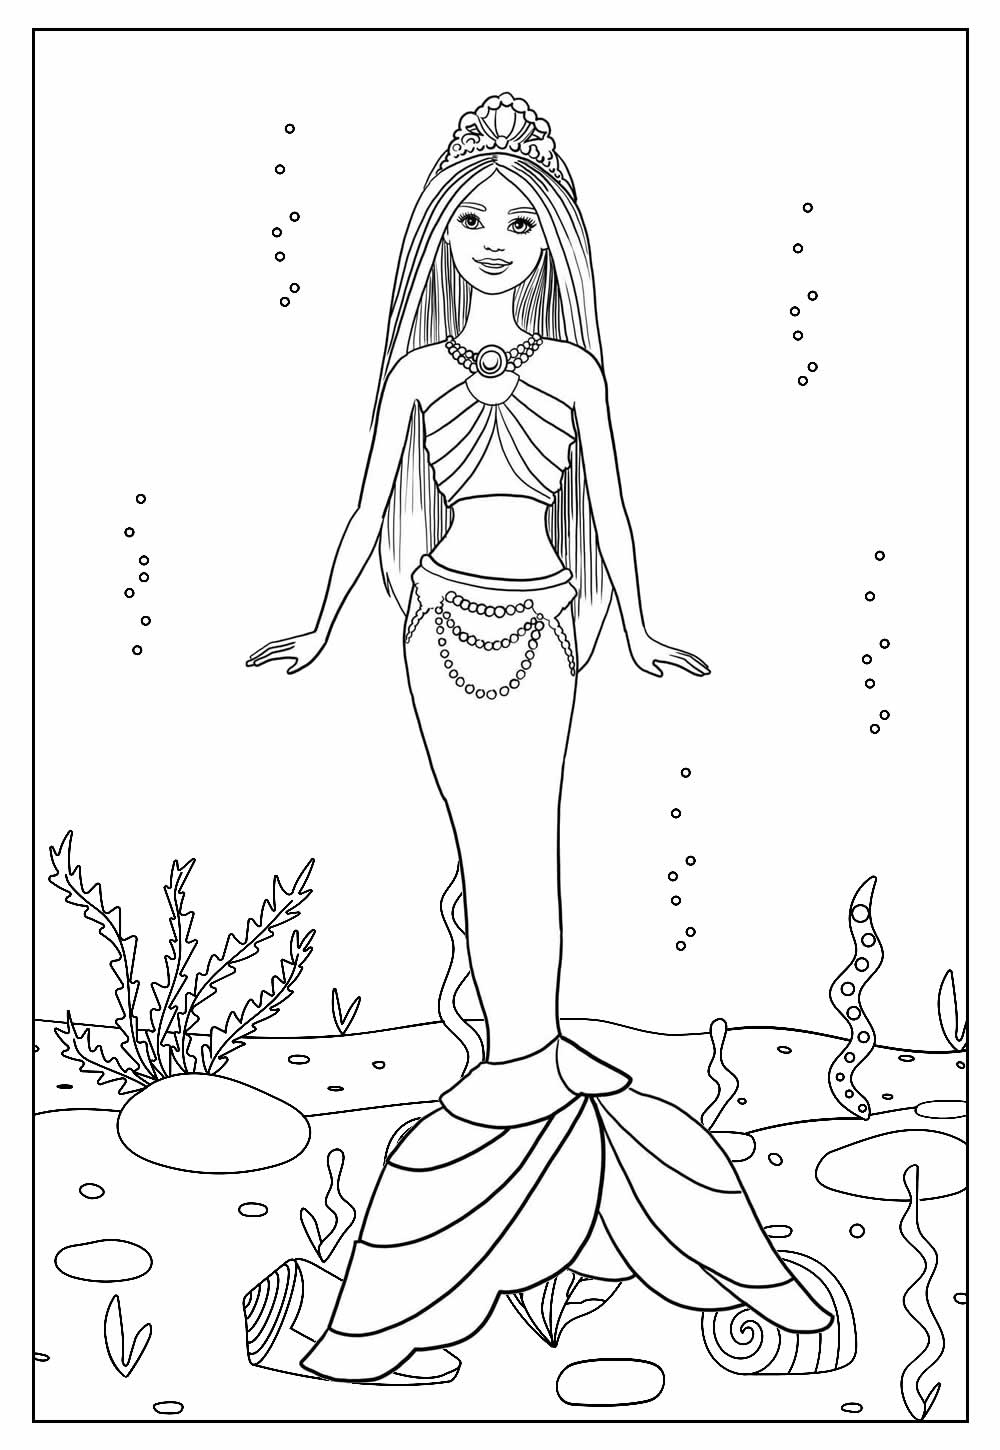 Barbie-Sereia-Desenho-pra-pintar-colorir-e-imprimir-Mermaid-13-Capa - Arte